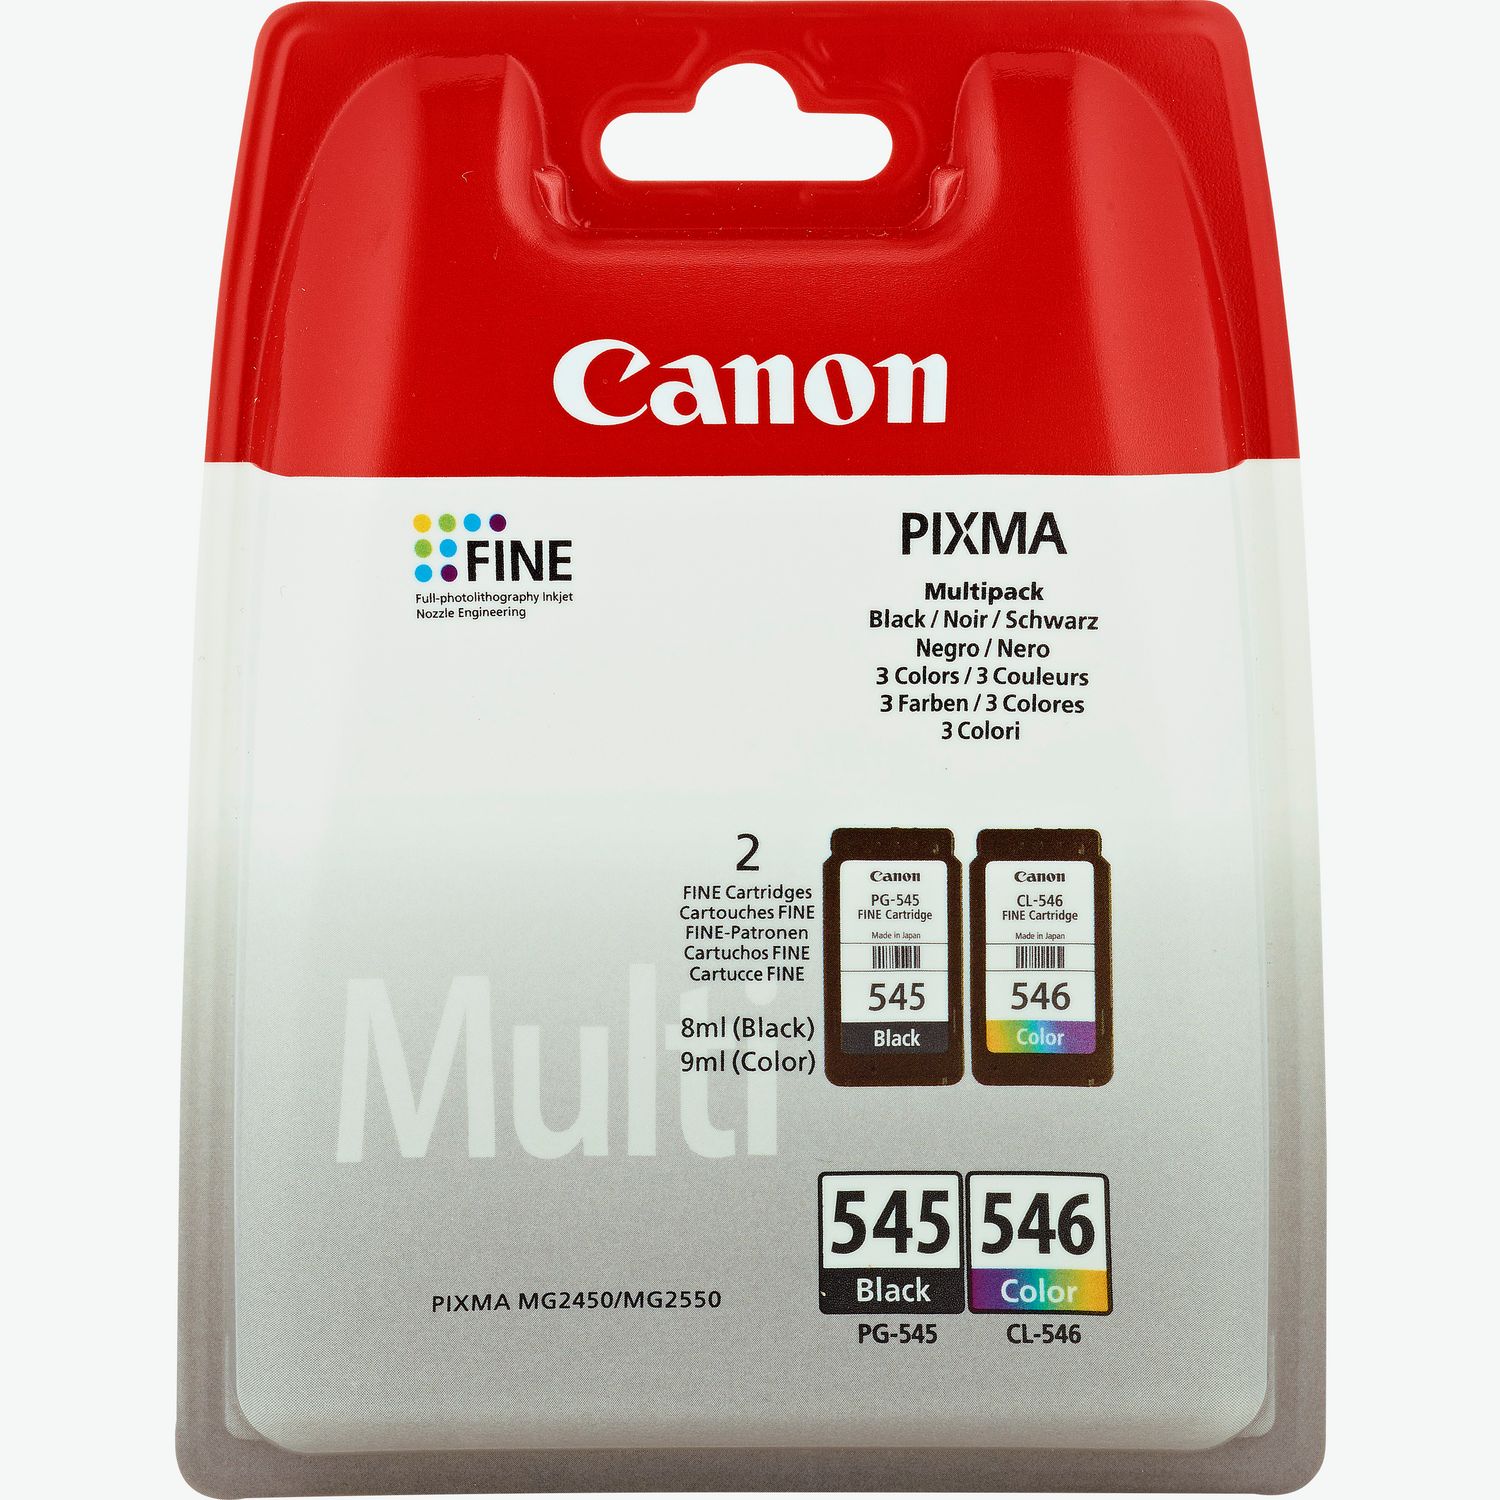 Buy Canon PIXMA TS3350 Wireless Colour All in One Inkjet Photo Printer,  Black — Canon Ireland Store